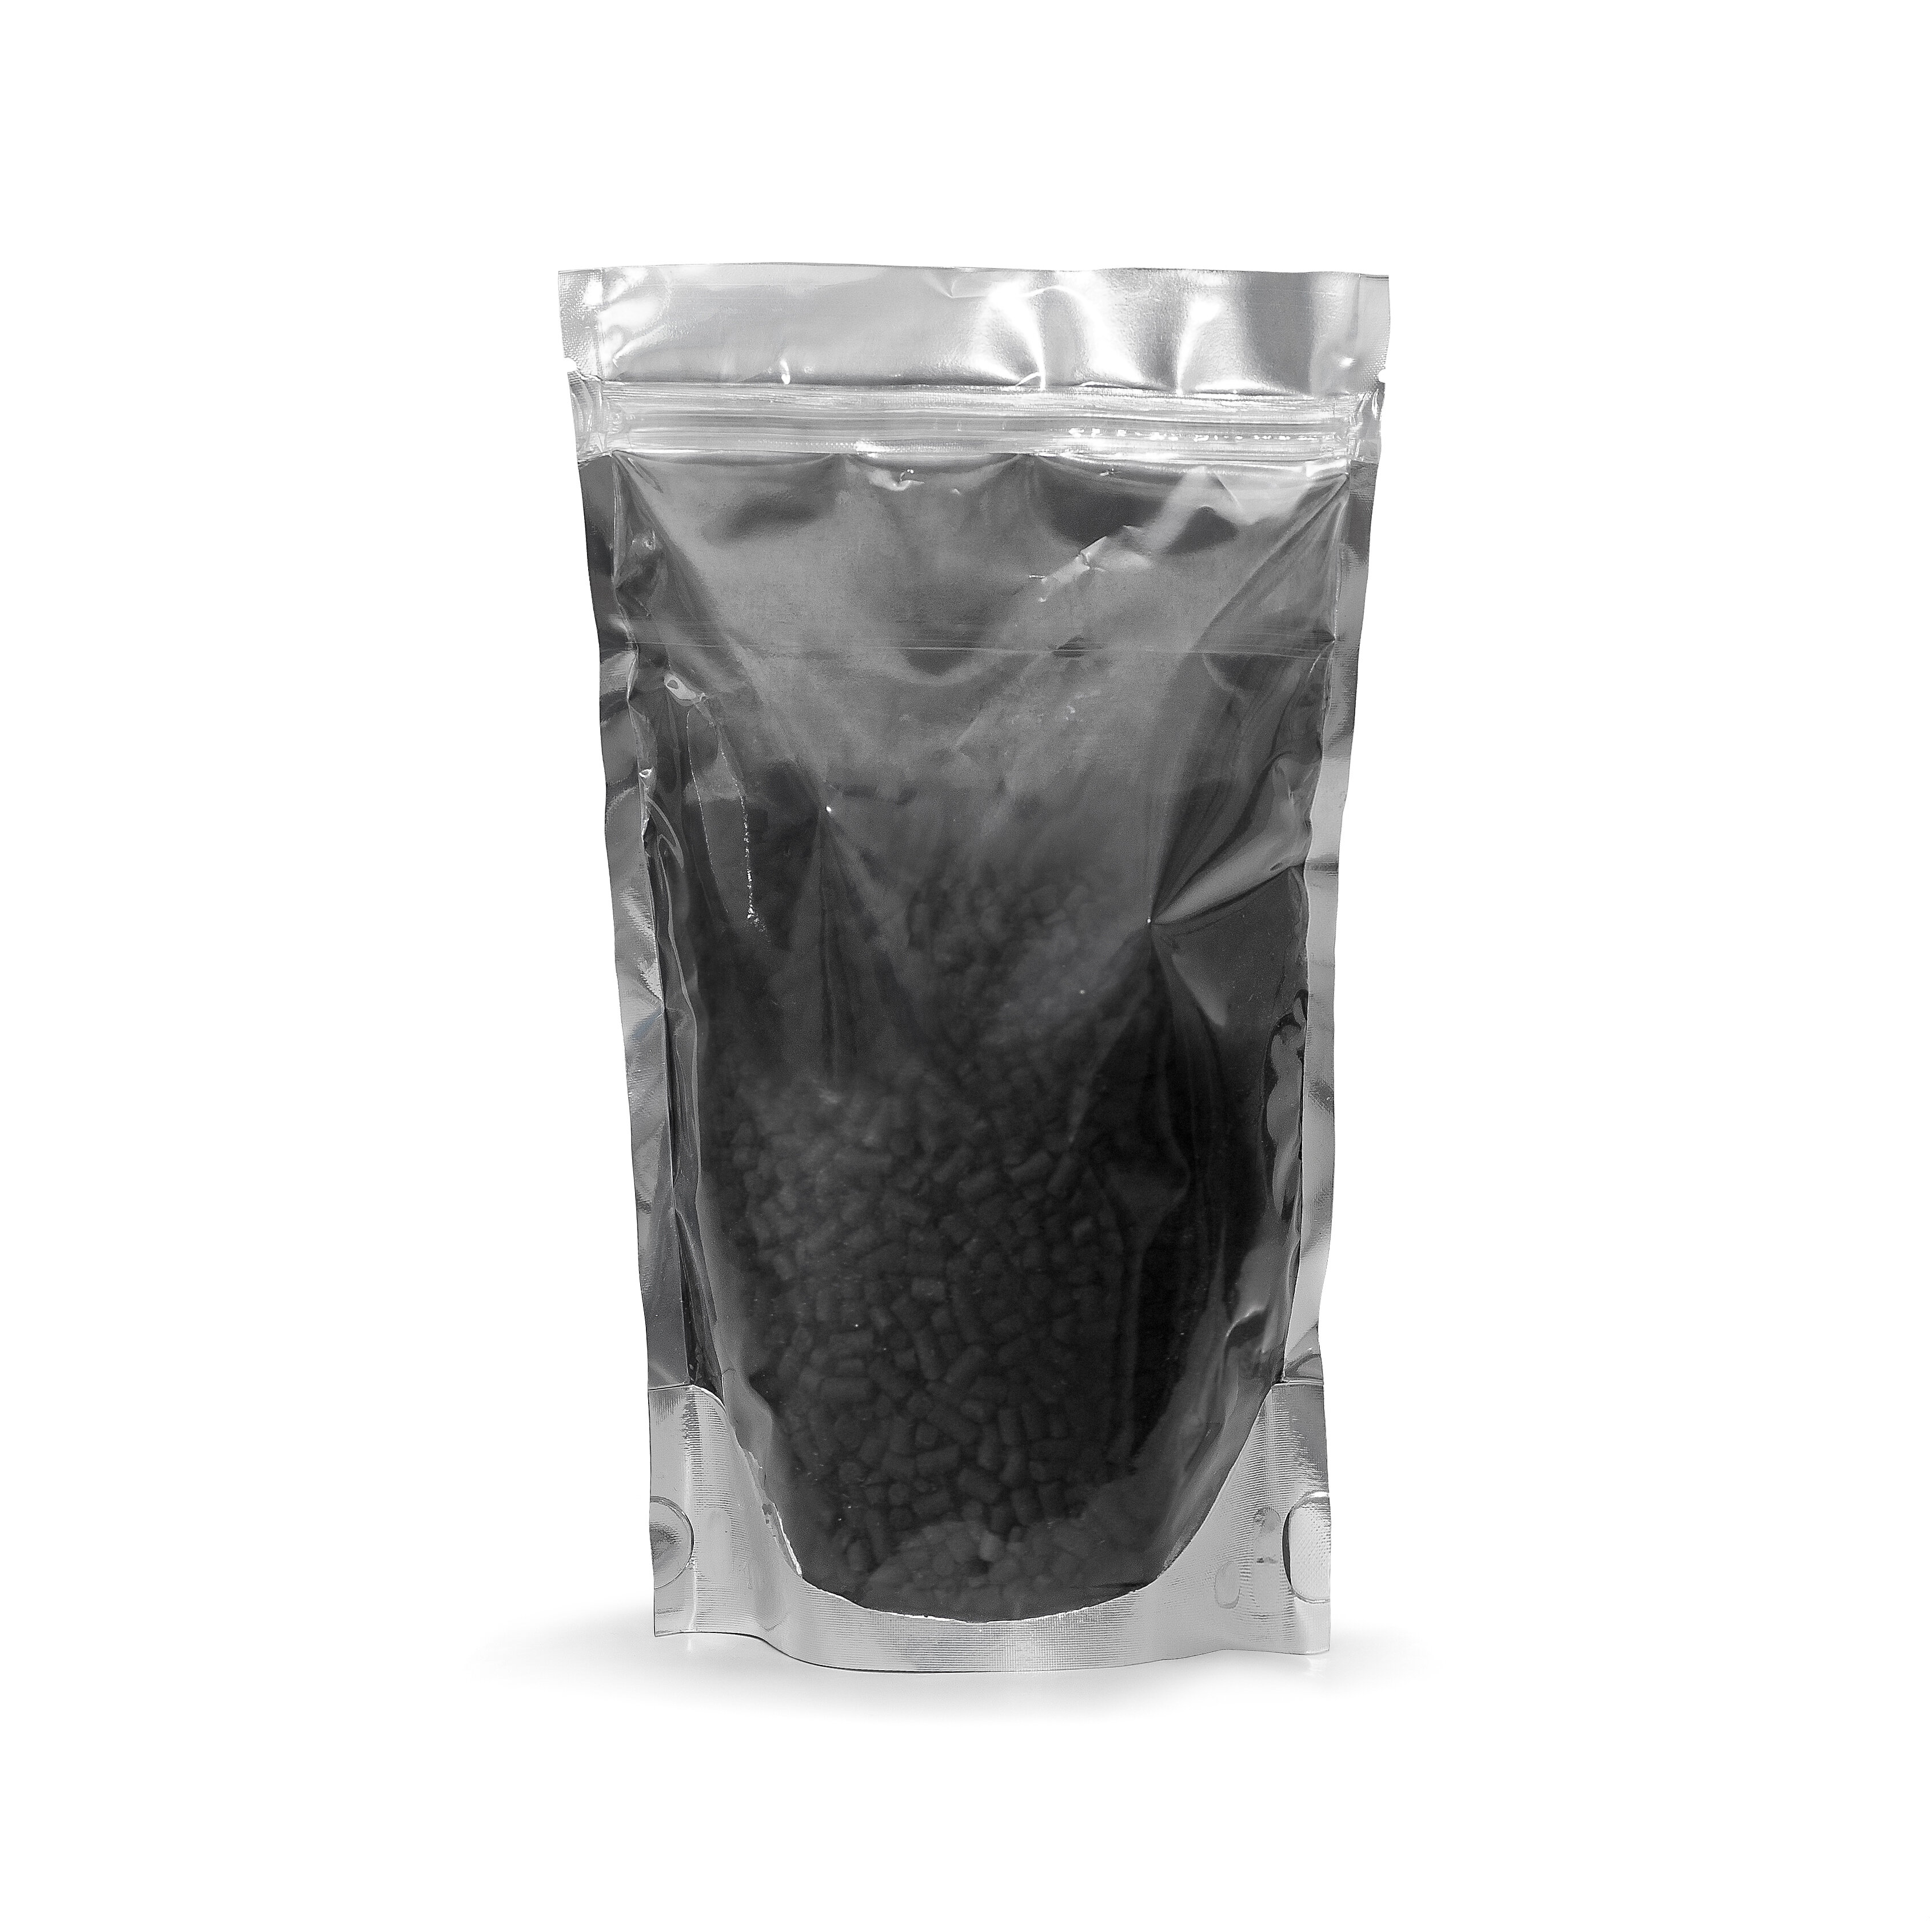 "Уголь гранулированный (пеллетированный) активированный для фильтров кухонных вытяжек - 0,5 литра" - фотография № 2